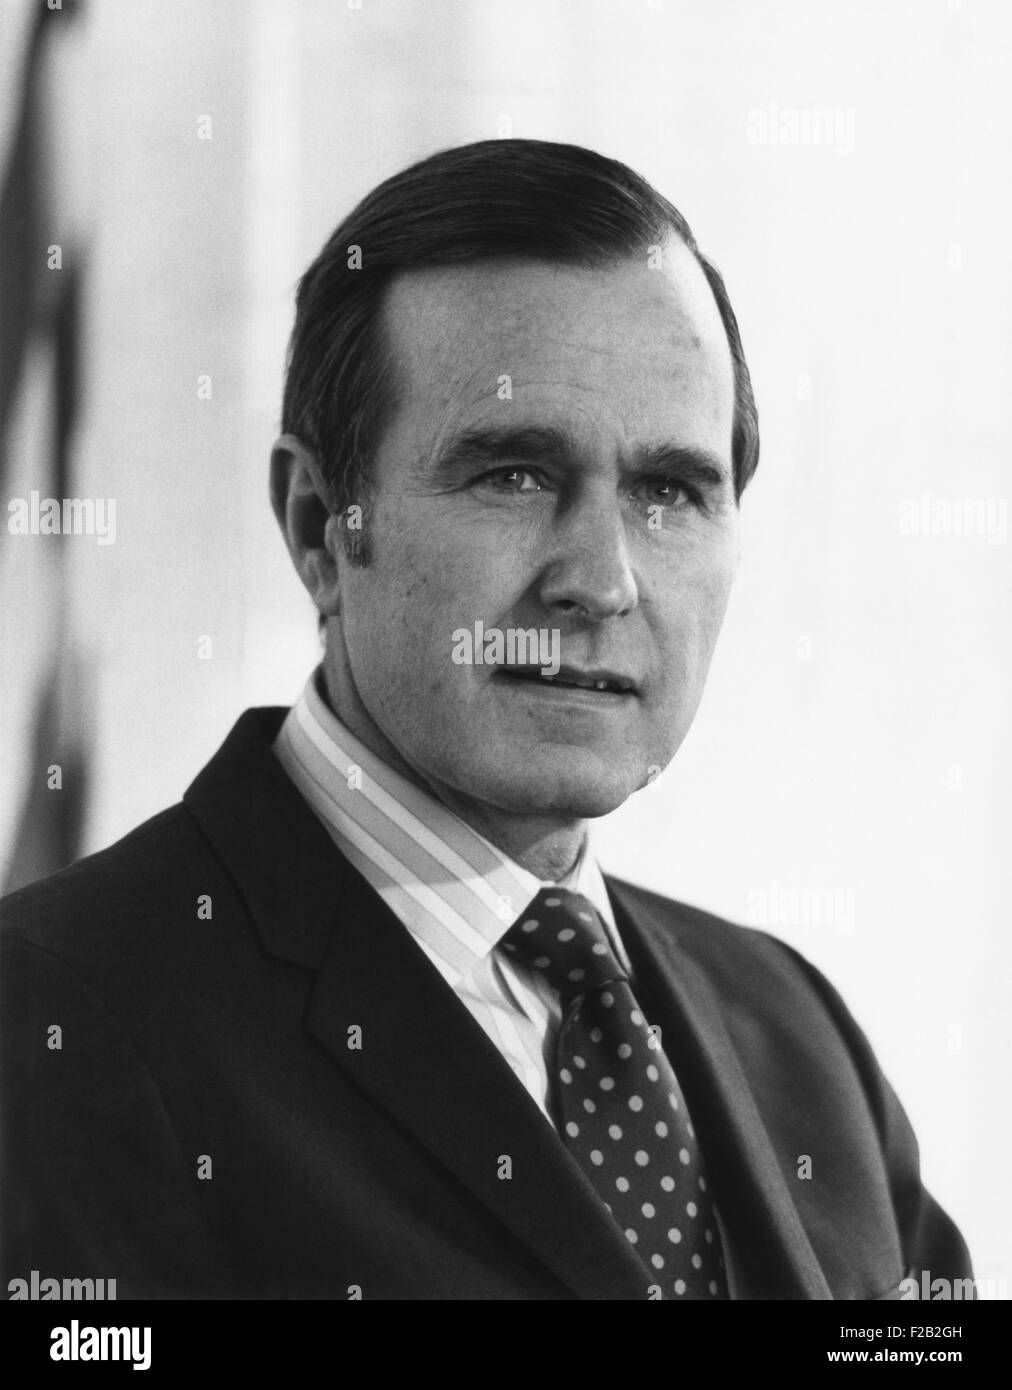 George H.W. Bush, el Embajador de Estados Unidos ante las Naciones Unidas. Ocupó el cargo desde marzo de 1971 hasta enero de 1973, en los EE.UU. el reconocimiento de la China comunista y la eliminación de la China Nacionalista en el Consejo de Seguridad. (CSU 2015 7 346) Foto de stock